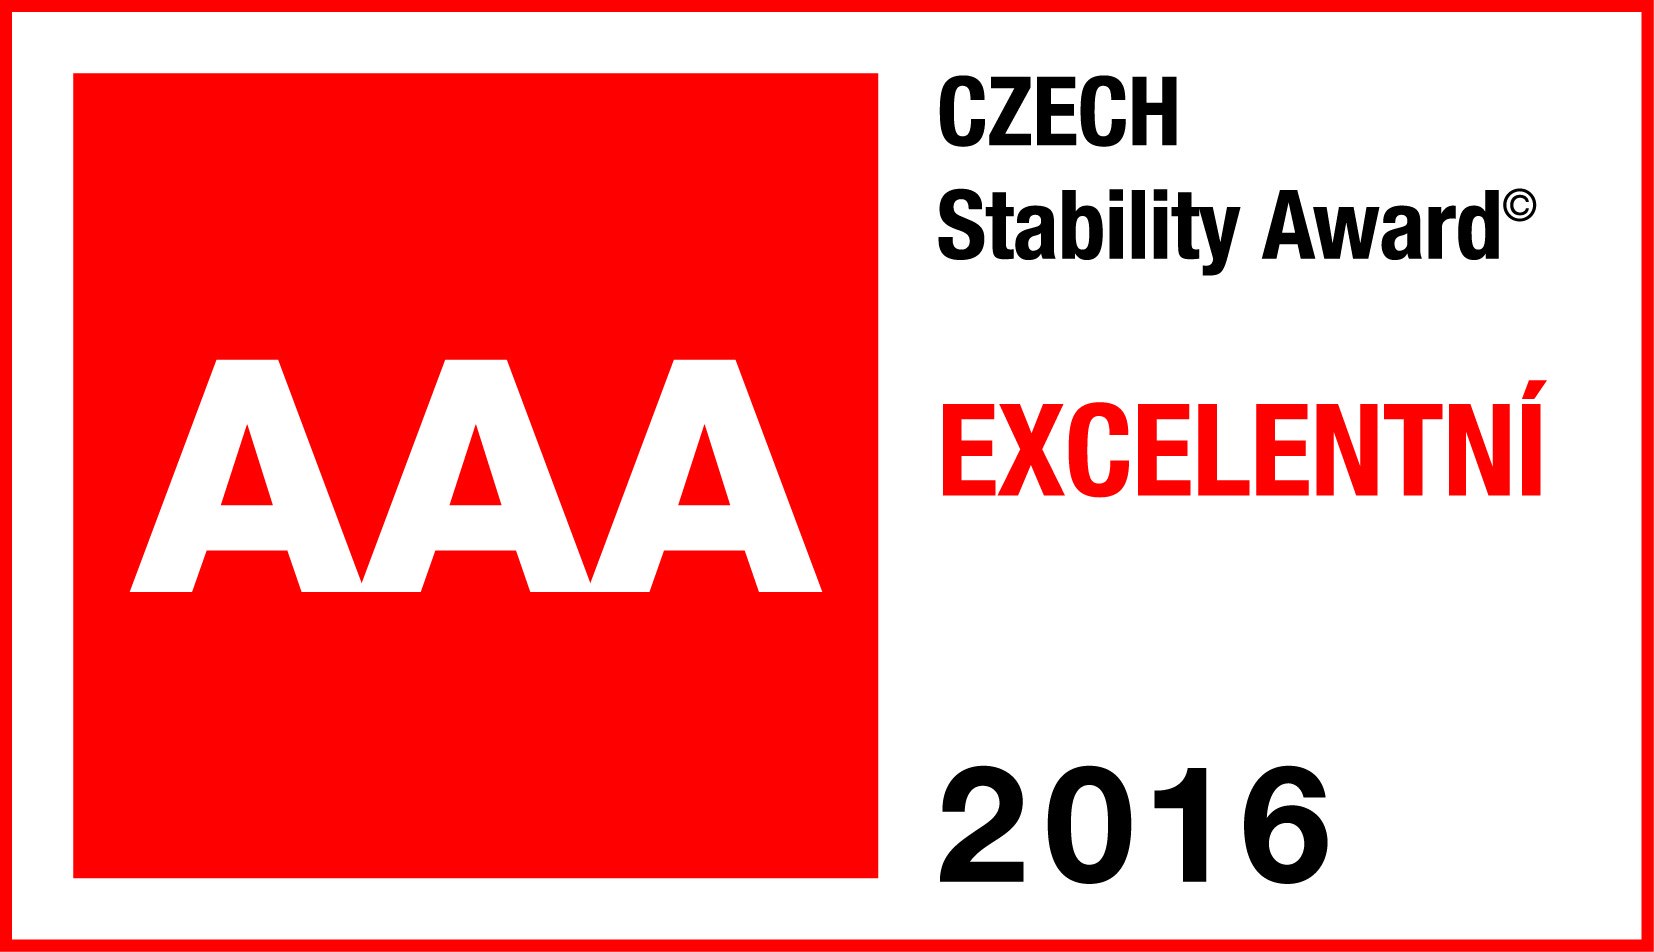 aaa czech stabiliti award